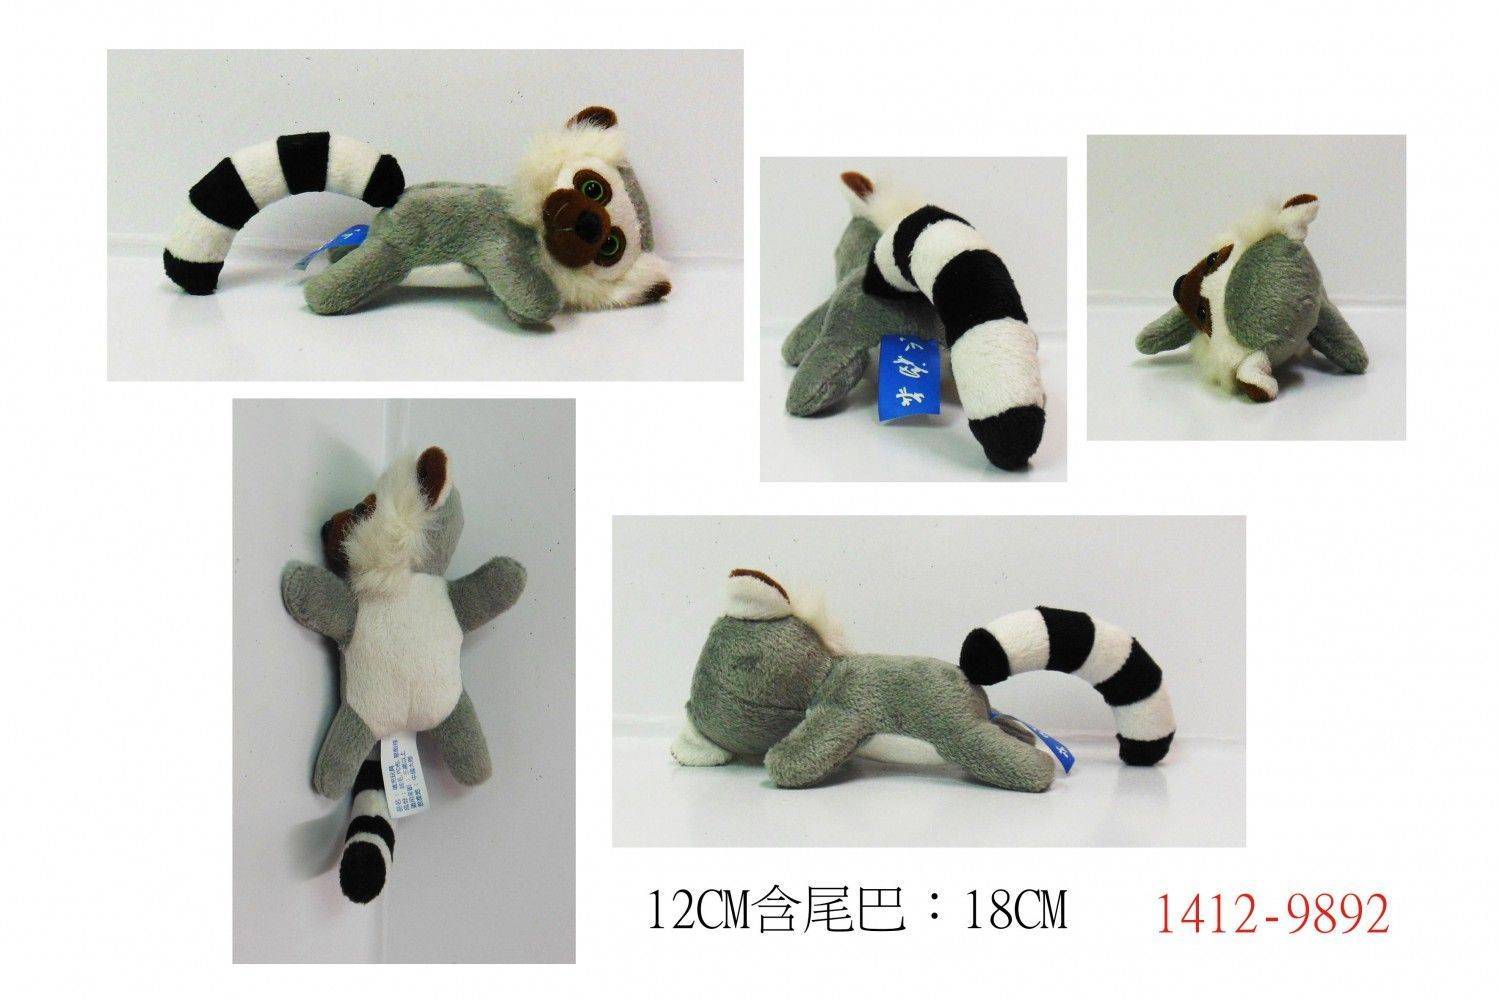 1412-9892磁石狐猴